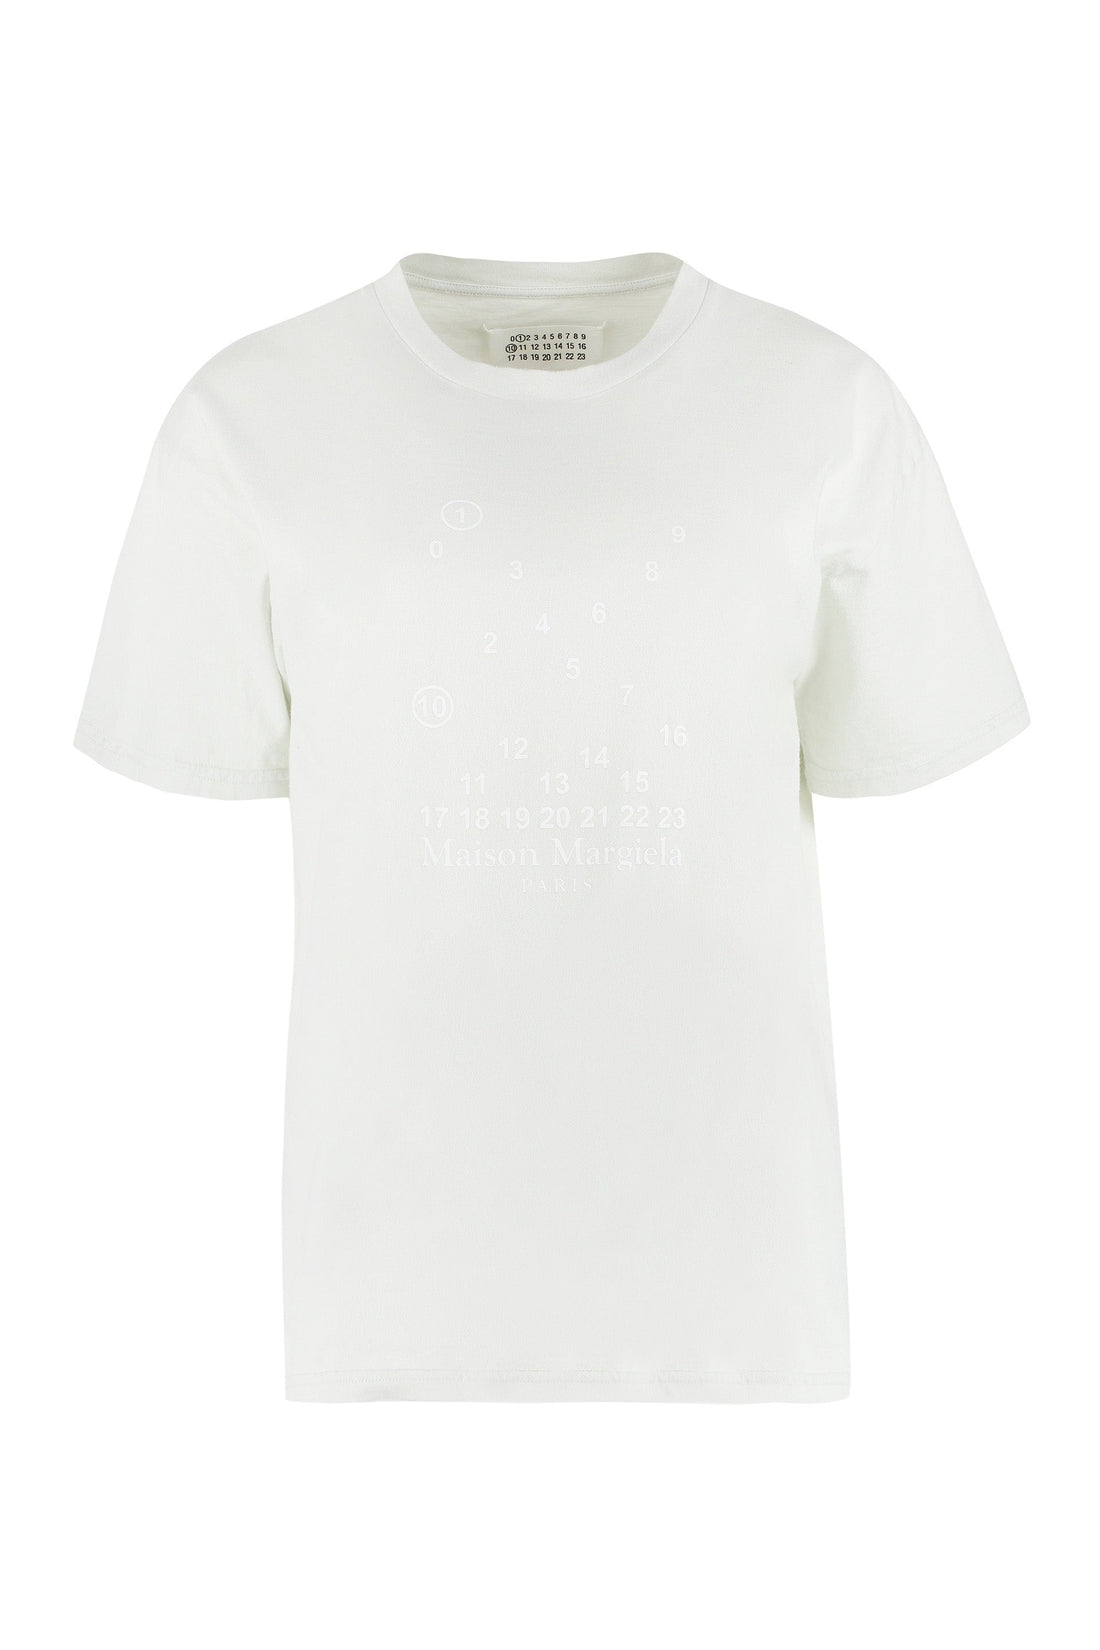 Maison Margiela-OUTLET-SALE-Cotton crew-neck T-shirt-ARCHIVIST